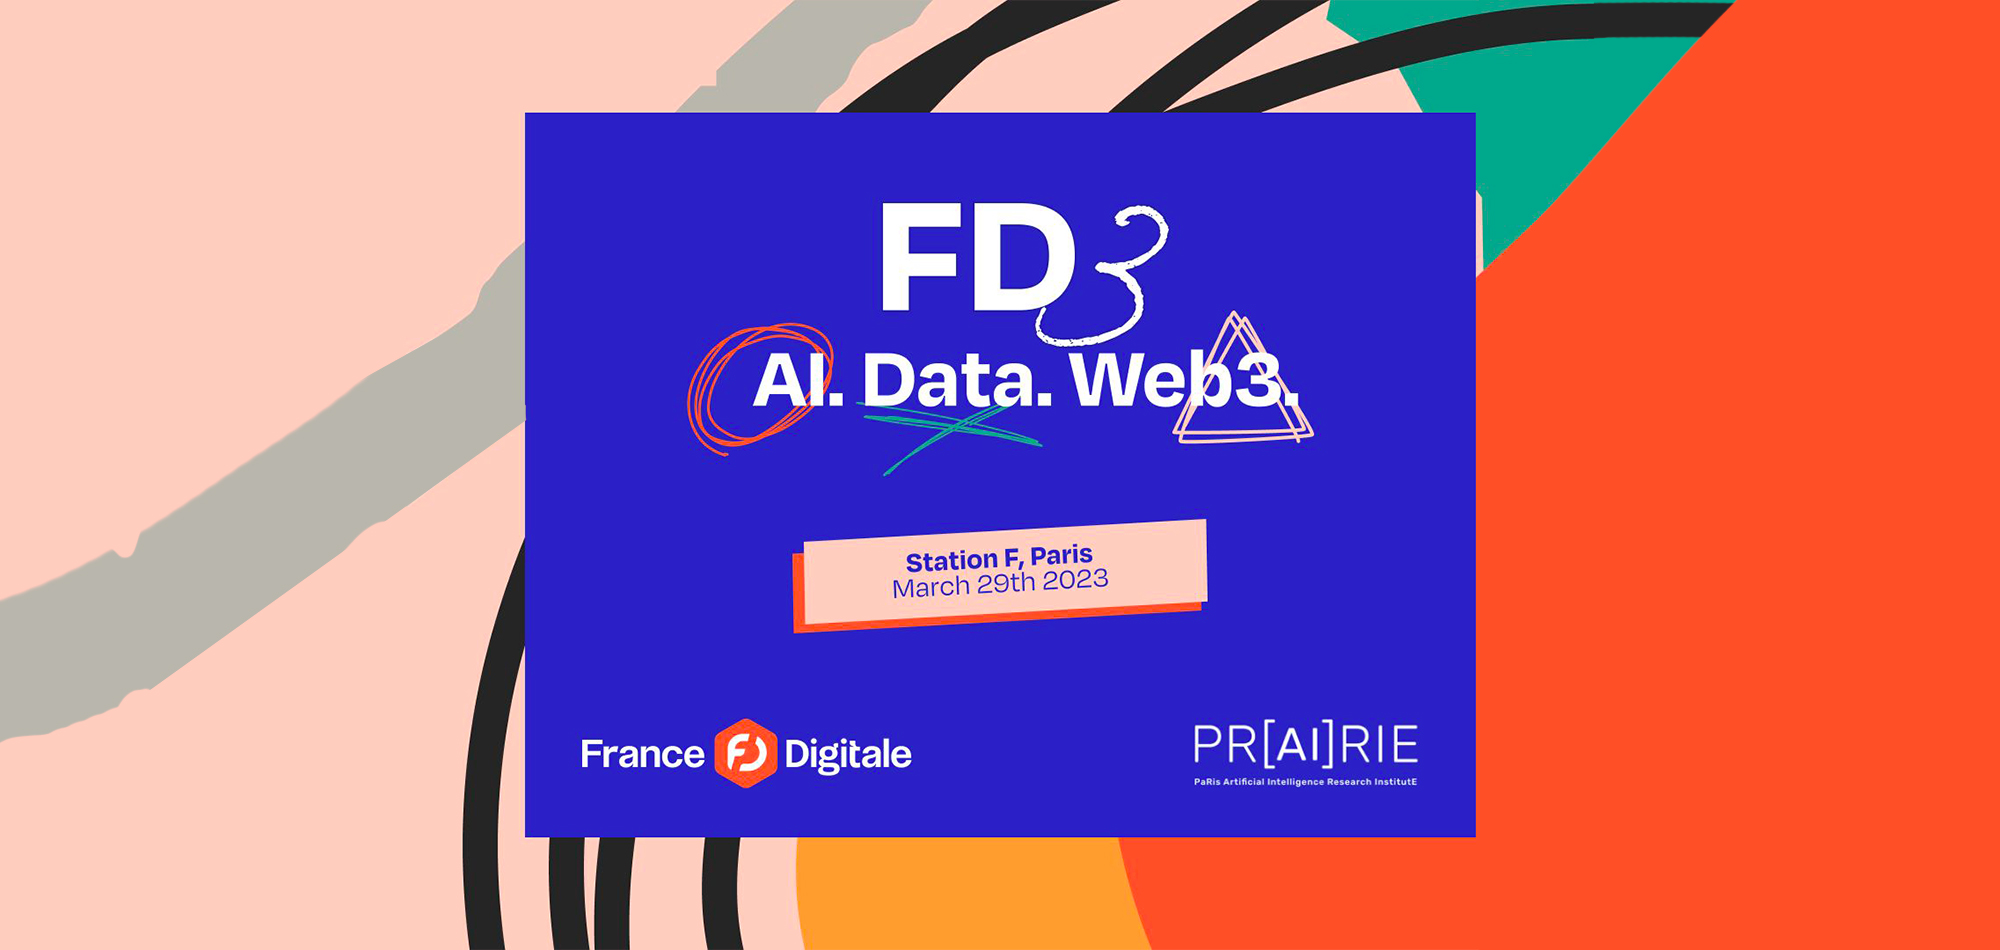 FD3 l'événement IA, Data et Web3 de France Digitale - AnotherBrain